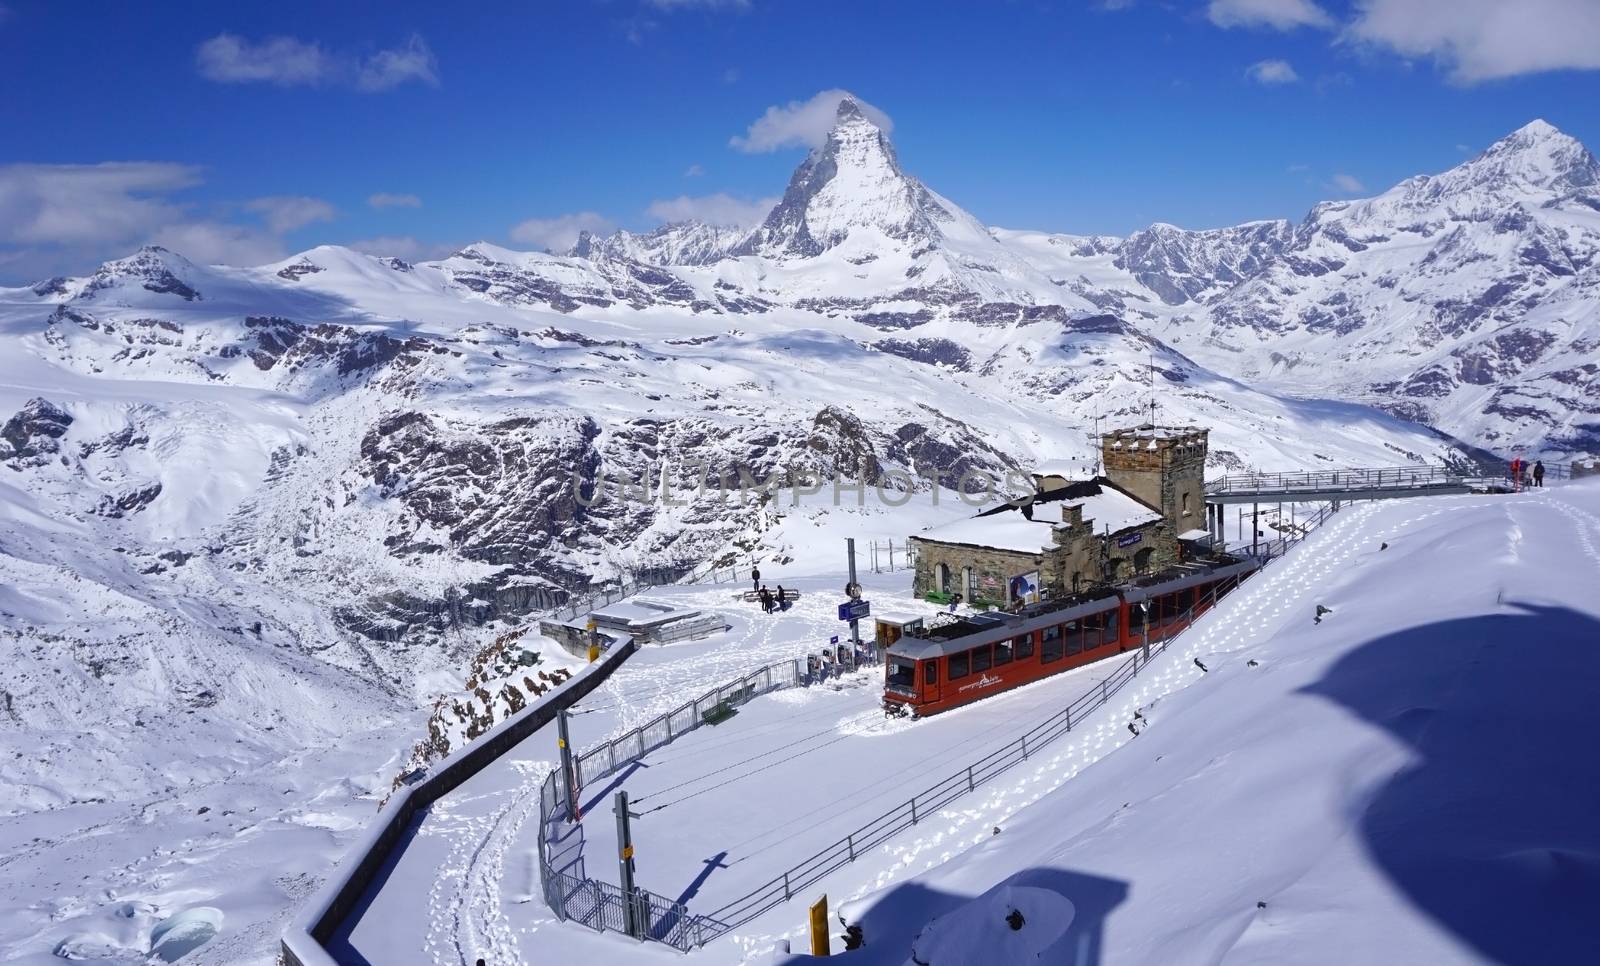 Scenery of Gornergrat train station with Matterhorn peak in the background, Zermatt, Switzerland